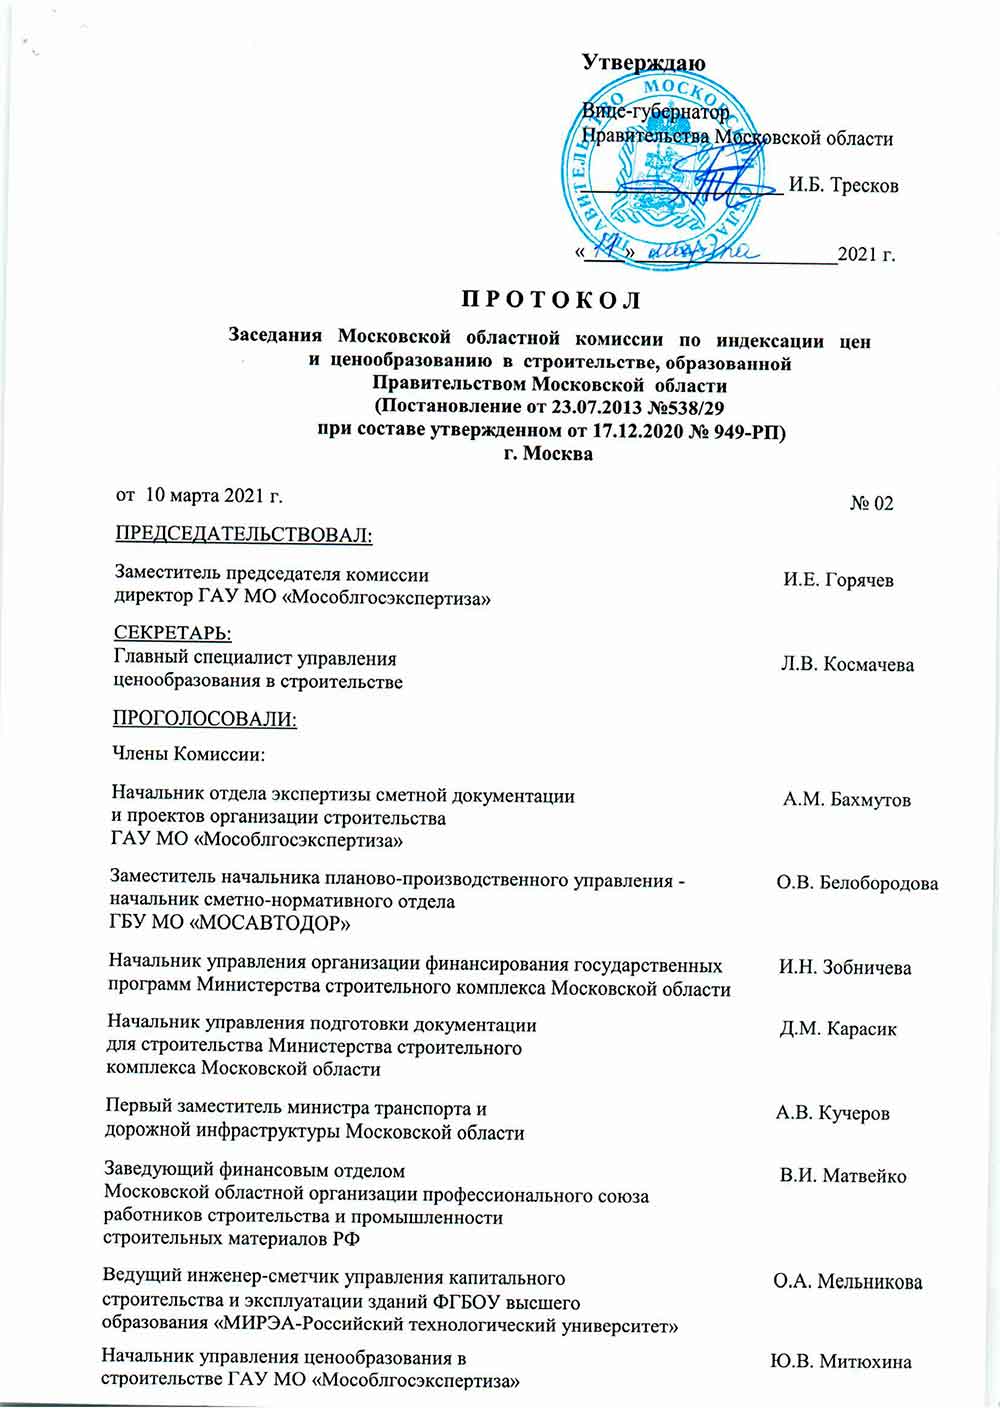 Протокол Мособлгосэкспертизы №02 от 10.03.2021 года